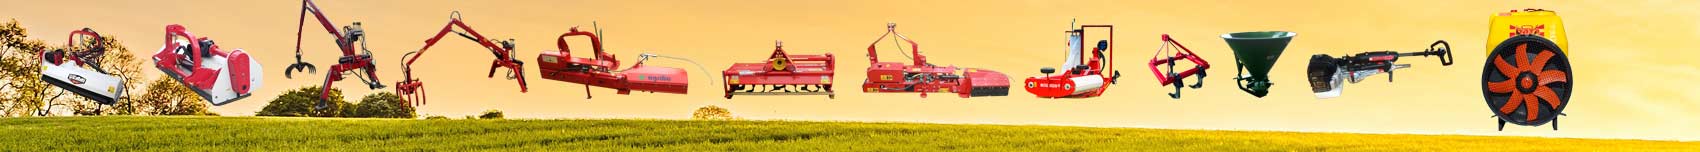 poljoprivredne masine, utovarivac stajnjaka, grajfer, freze, freza pipalica, traktorska kosacica